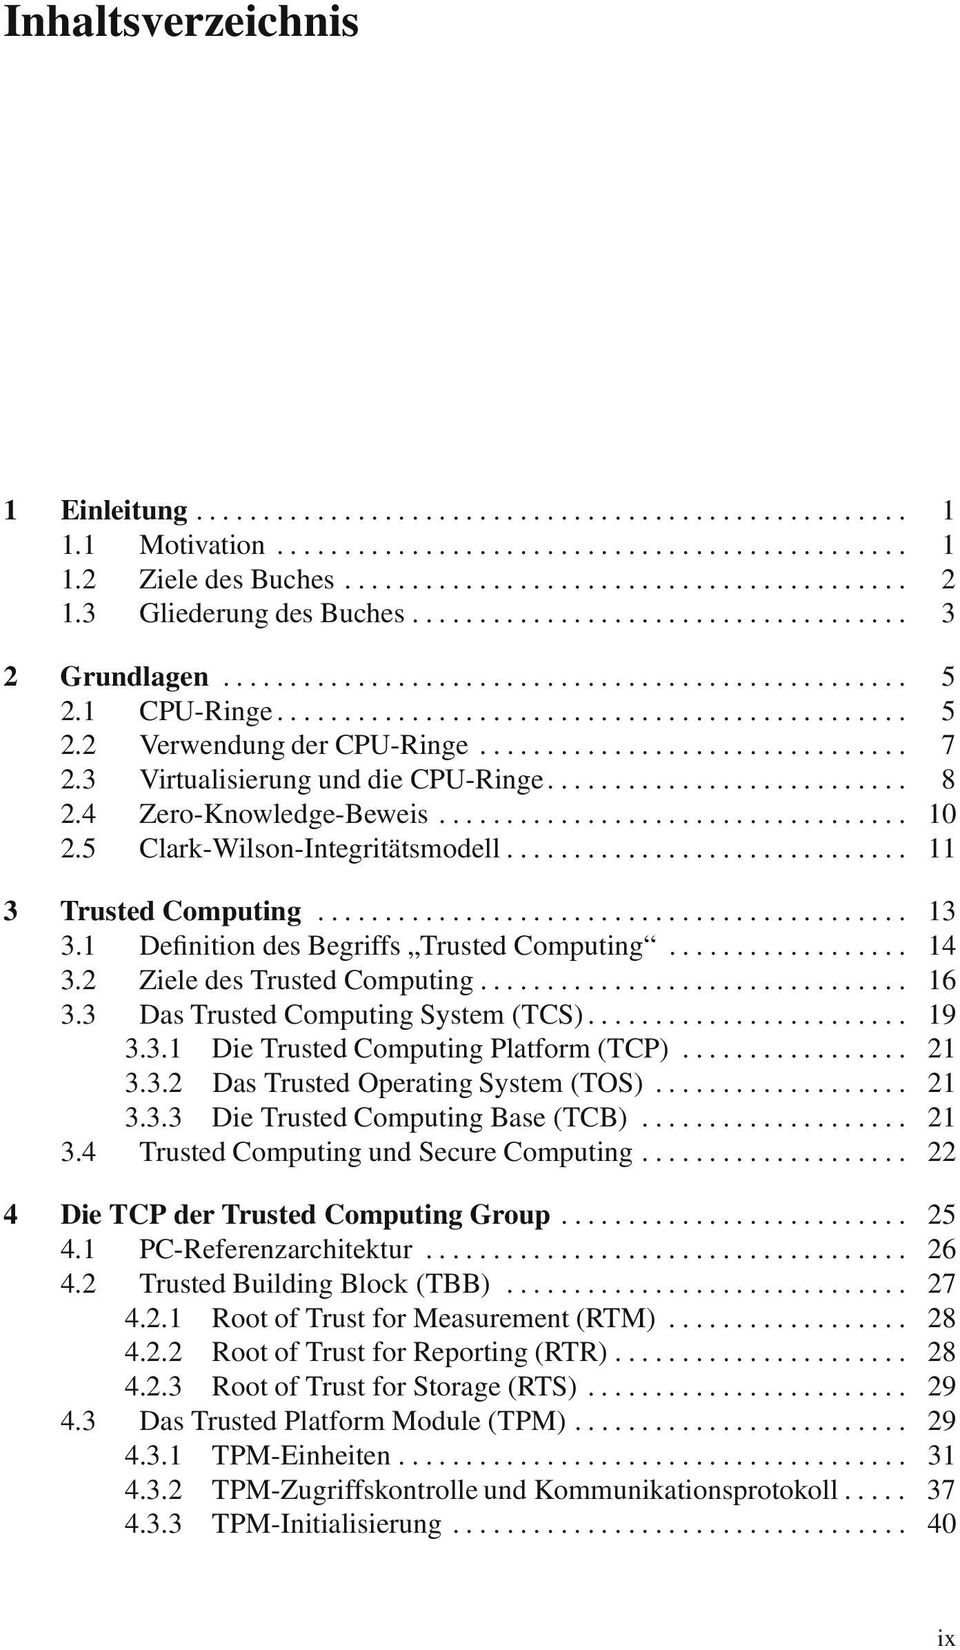 2 ZieledesTrustedComputing... 16 3.3 DasTrustedComputingSystem(TCS)... 19 3.3.1 DieTrustedComputingPlatform(TCP)... 21 3.3.2 DasTrustedOperatingSystem(TOS)... 21 3.3.3 DieTrustedComputingBase(TCB).